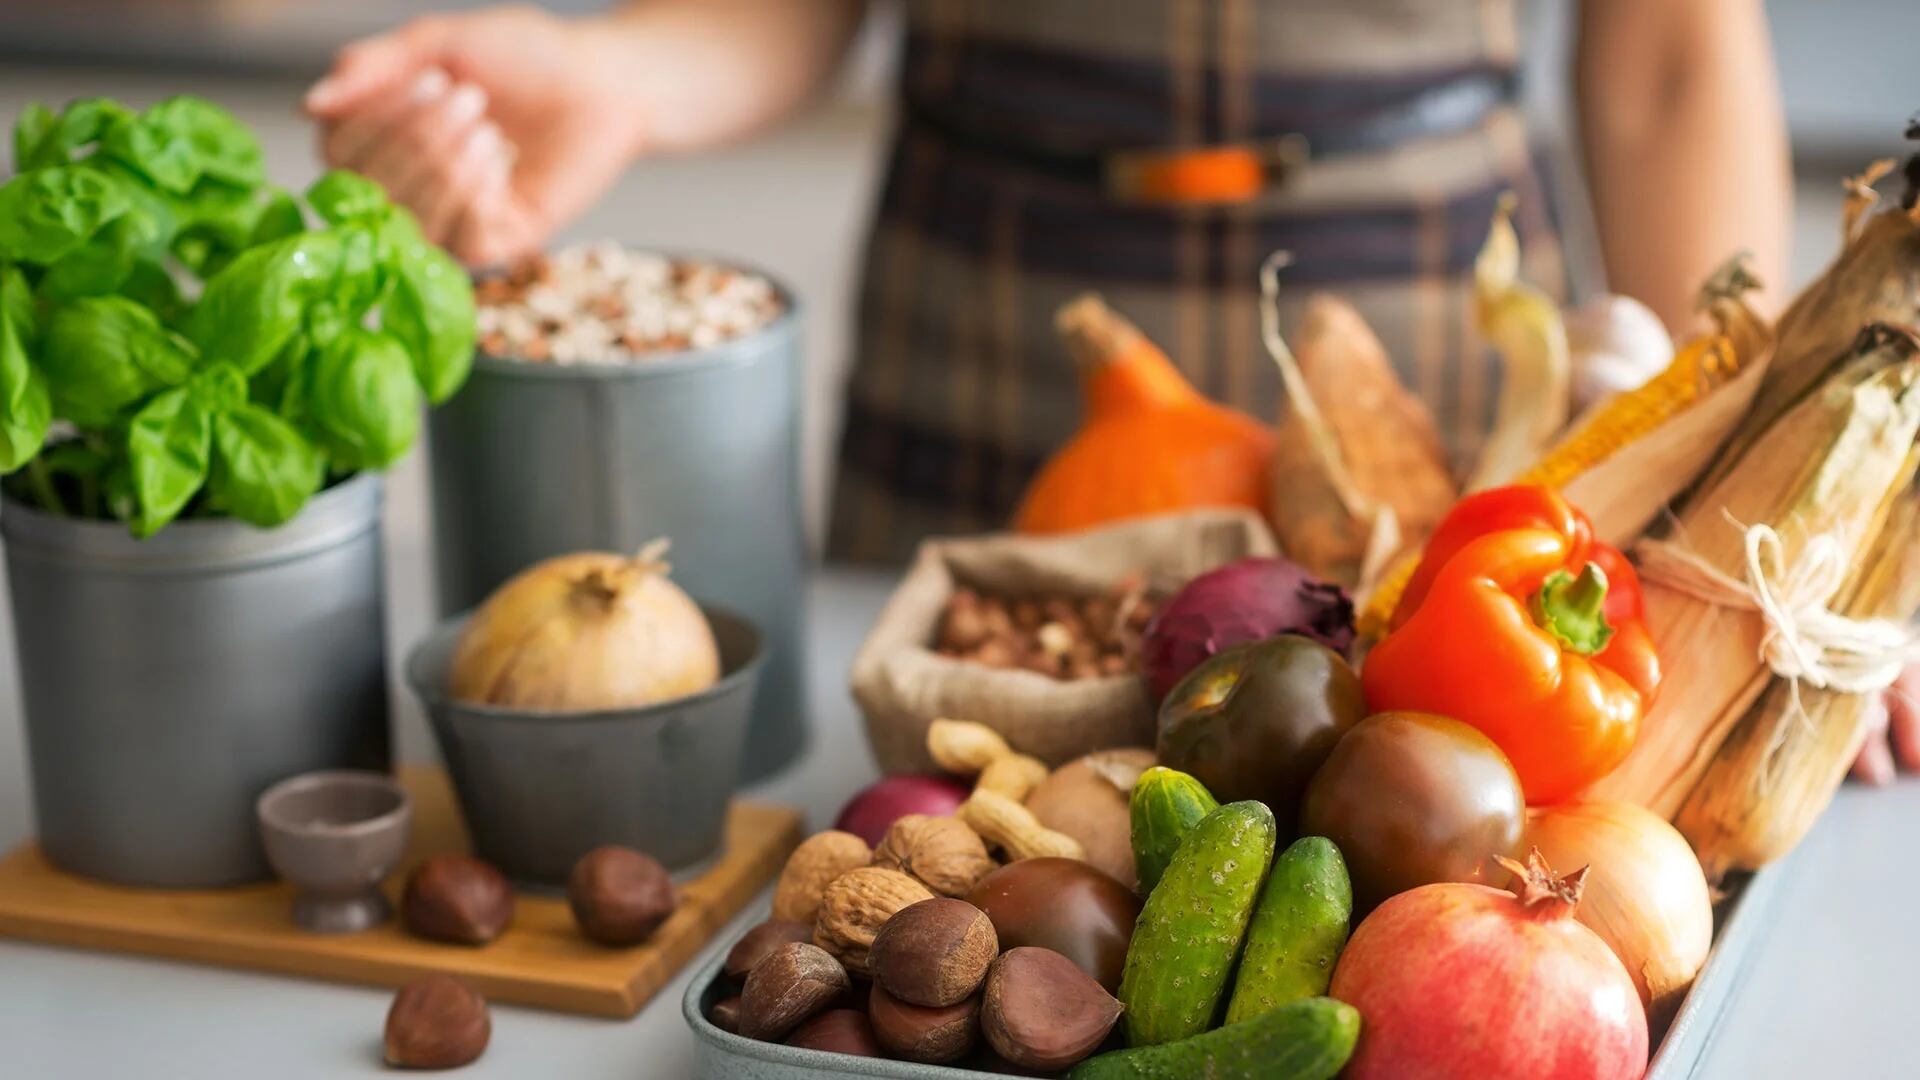 Comer más alimentos con un índice glucémico bajo, como la mayoría de las frutas, verduras y cereales integrales, es una medida que deben adoptar las personas con hígado graso. También se aconseja como prevención
(Getty)